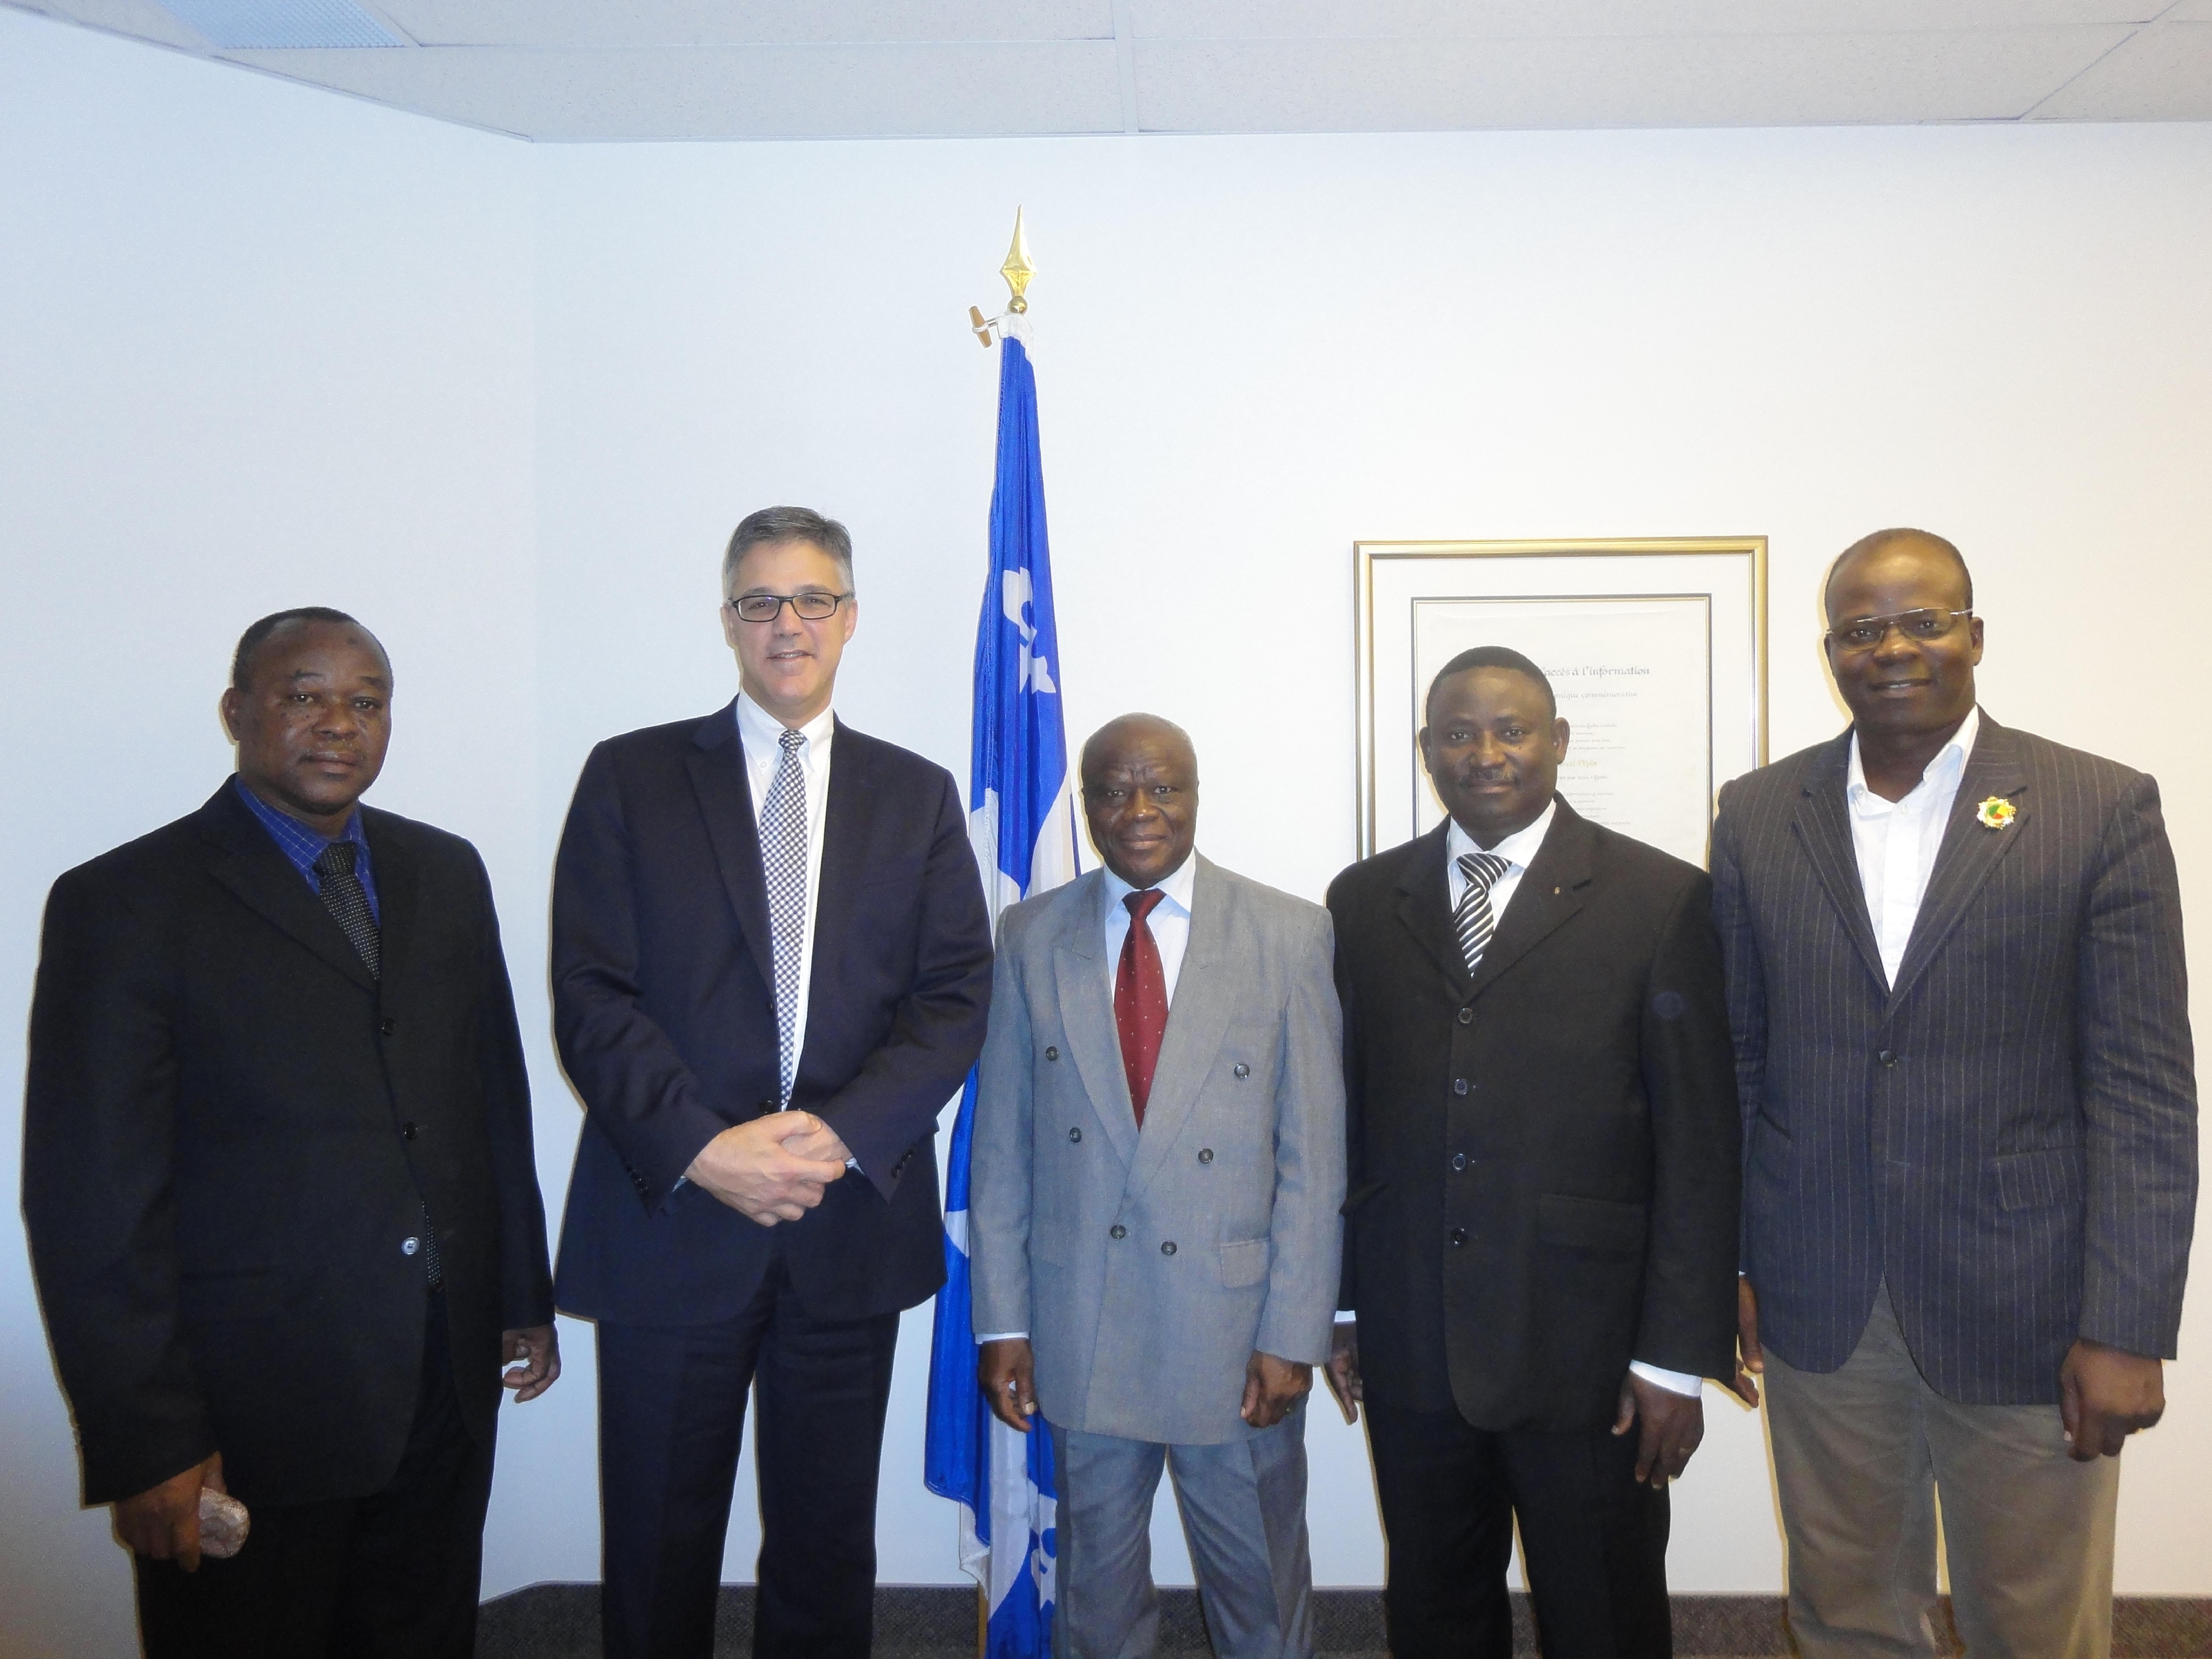 De gauche à droite : M. Adjibodou (CNIL Bénin), Me Chartier (Président de la CAI et de l’AFAPDP), M. Benon (Président de la CNIL Bénin), MM. Zossou et Akotégnon (CNIL Bénin)